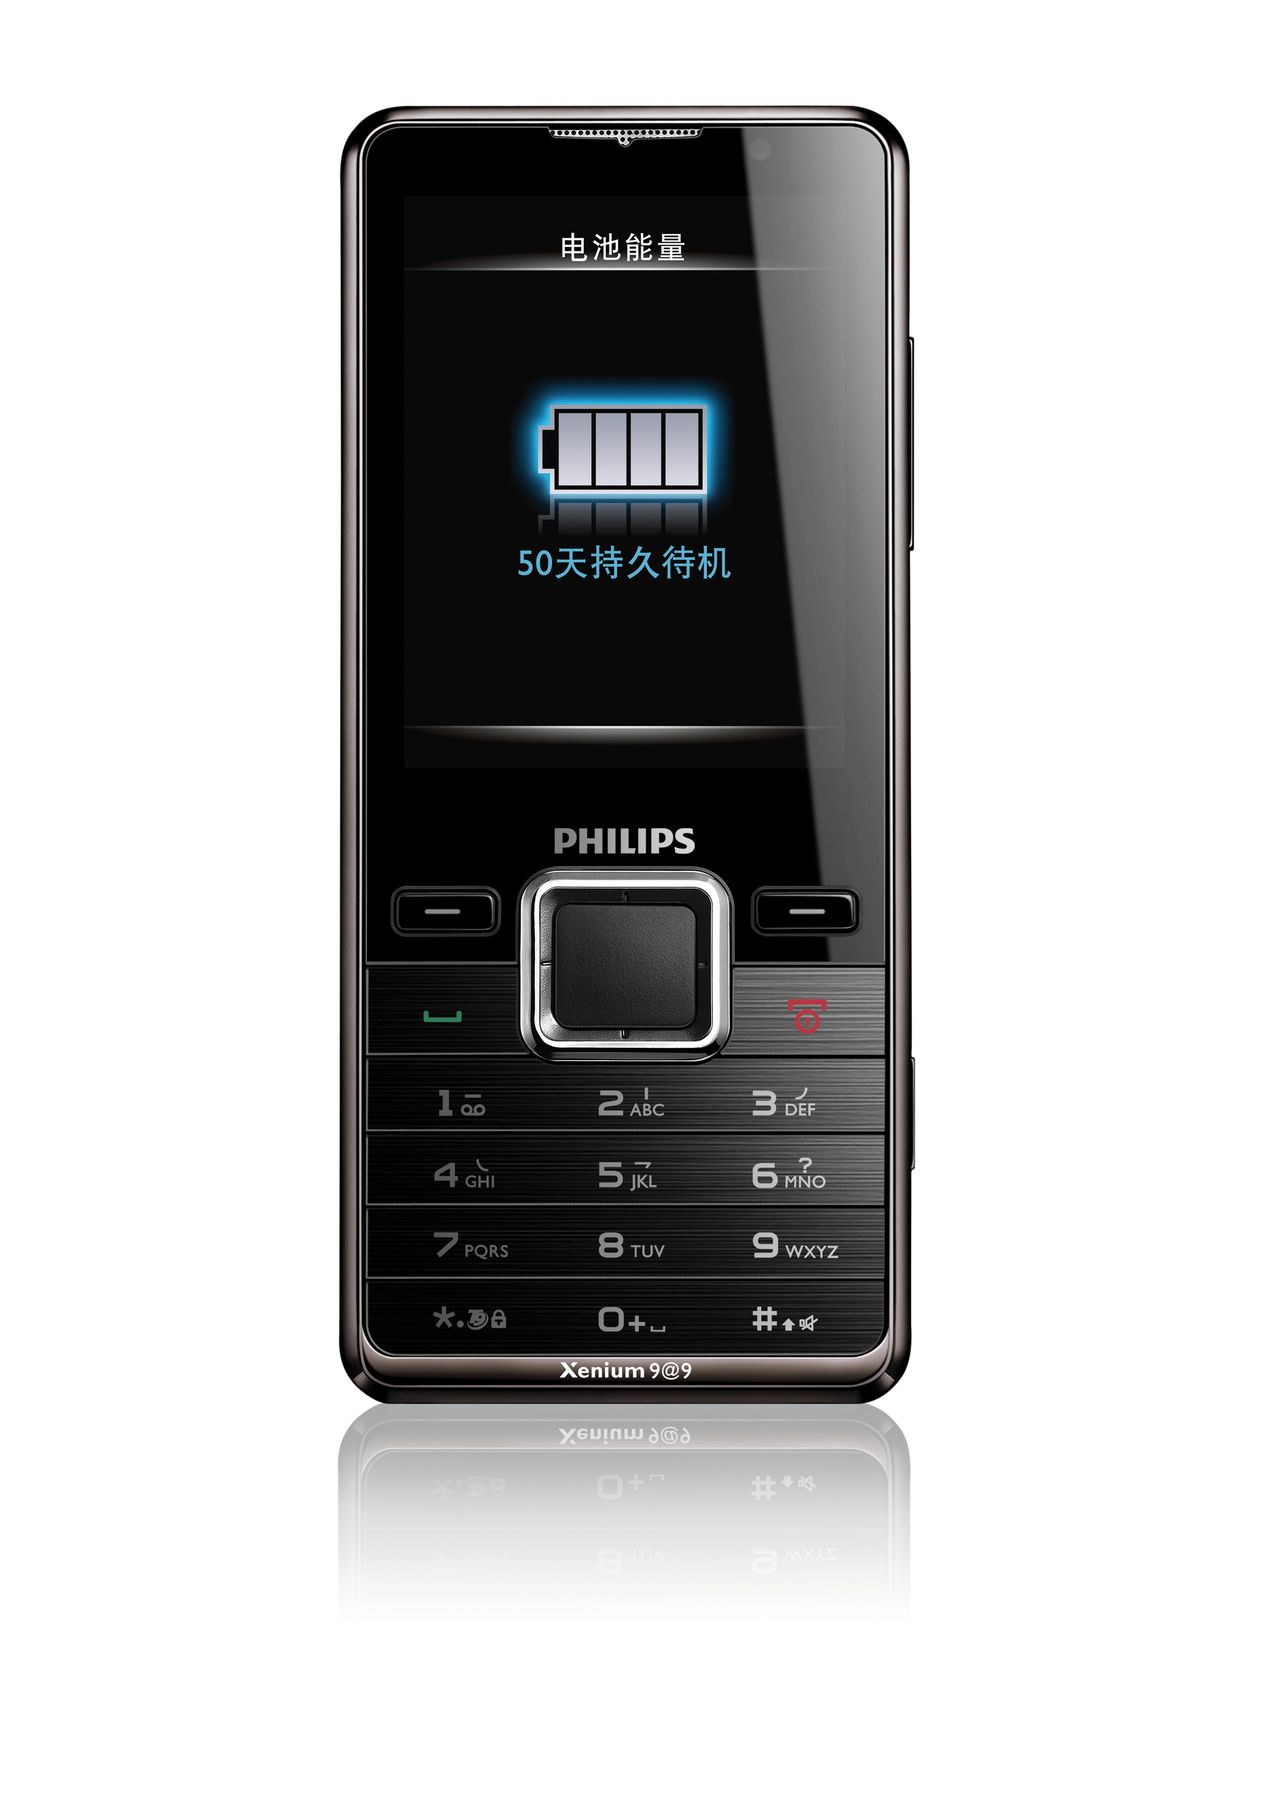 Филипс кнопочный цена. Мобильный телефон Филипс ксениум кнопочный. Philips Xenium e570. Филипс ксениум кнопочный с двумя сим. Филипс телефон кнопочный с мощным аккумулятором.